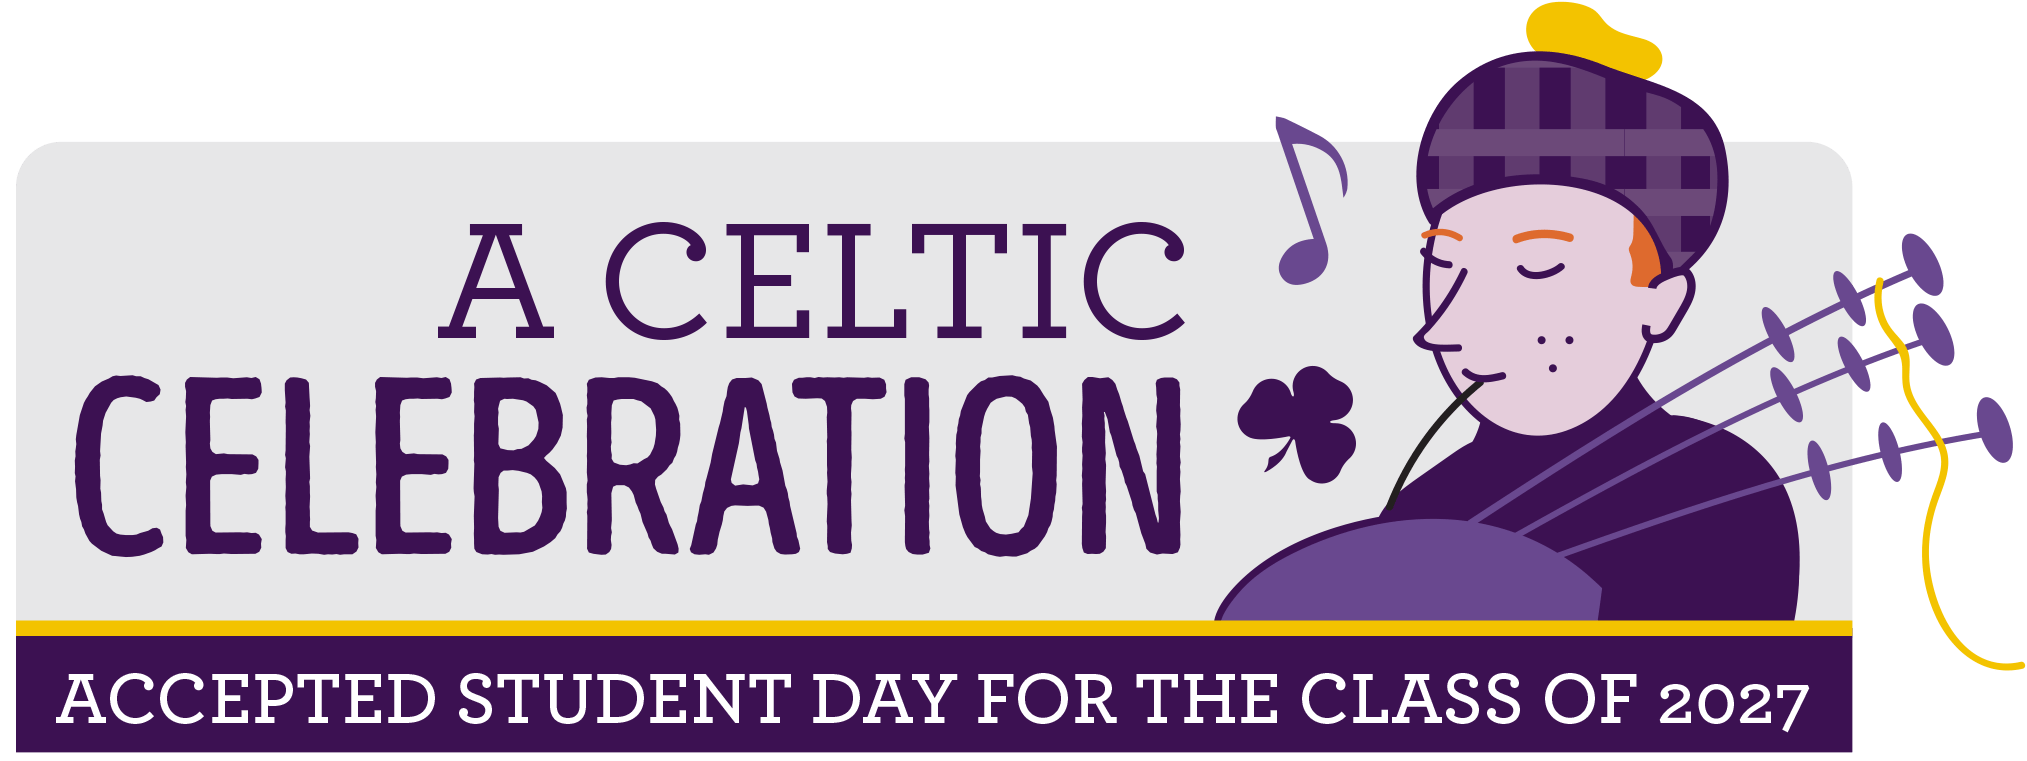 A Celtic Celebration 2023